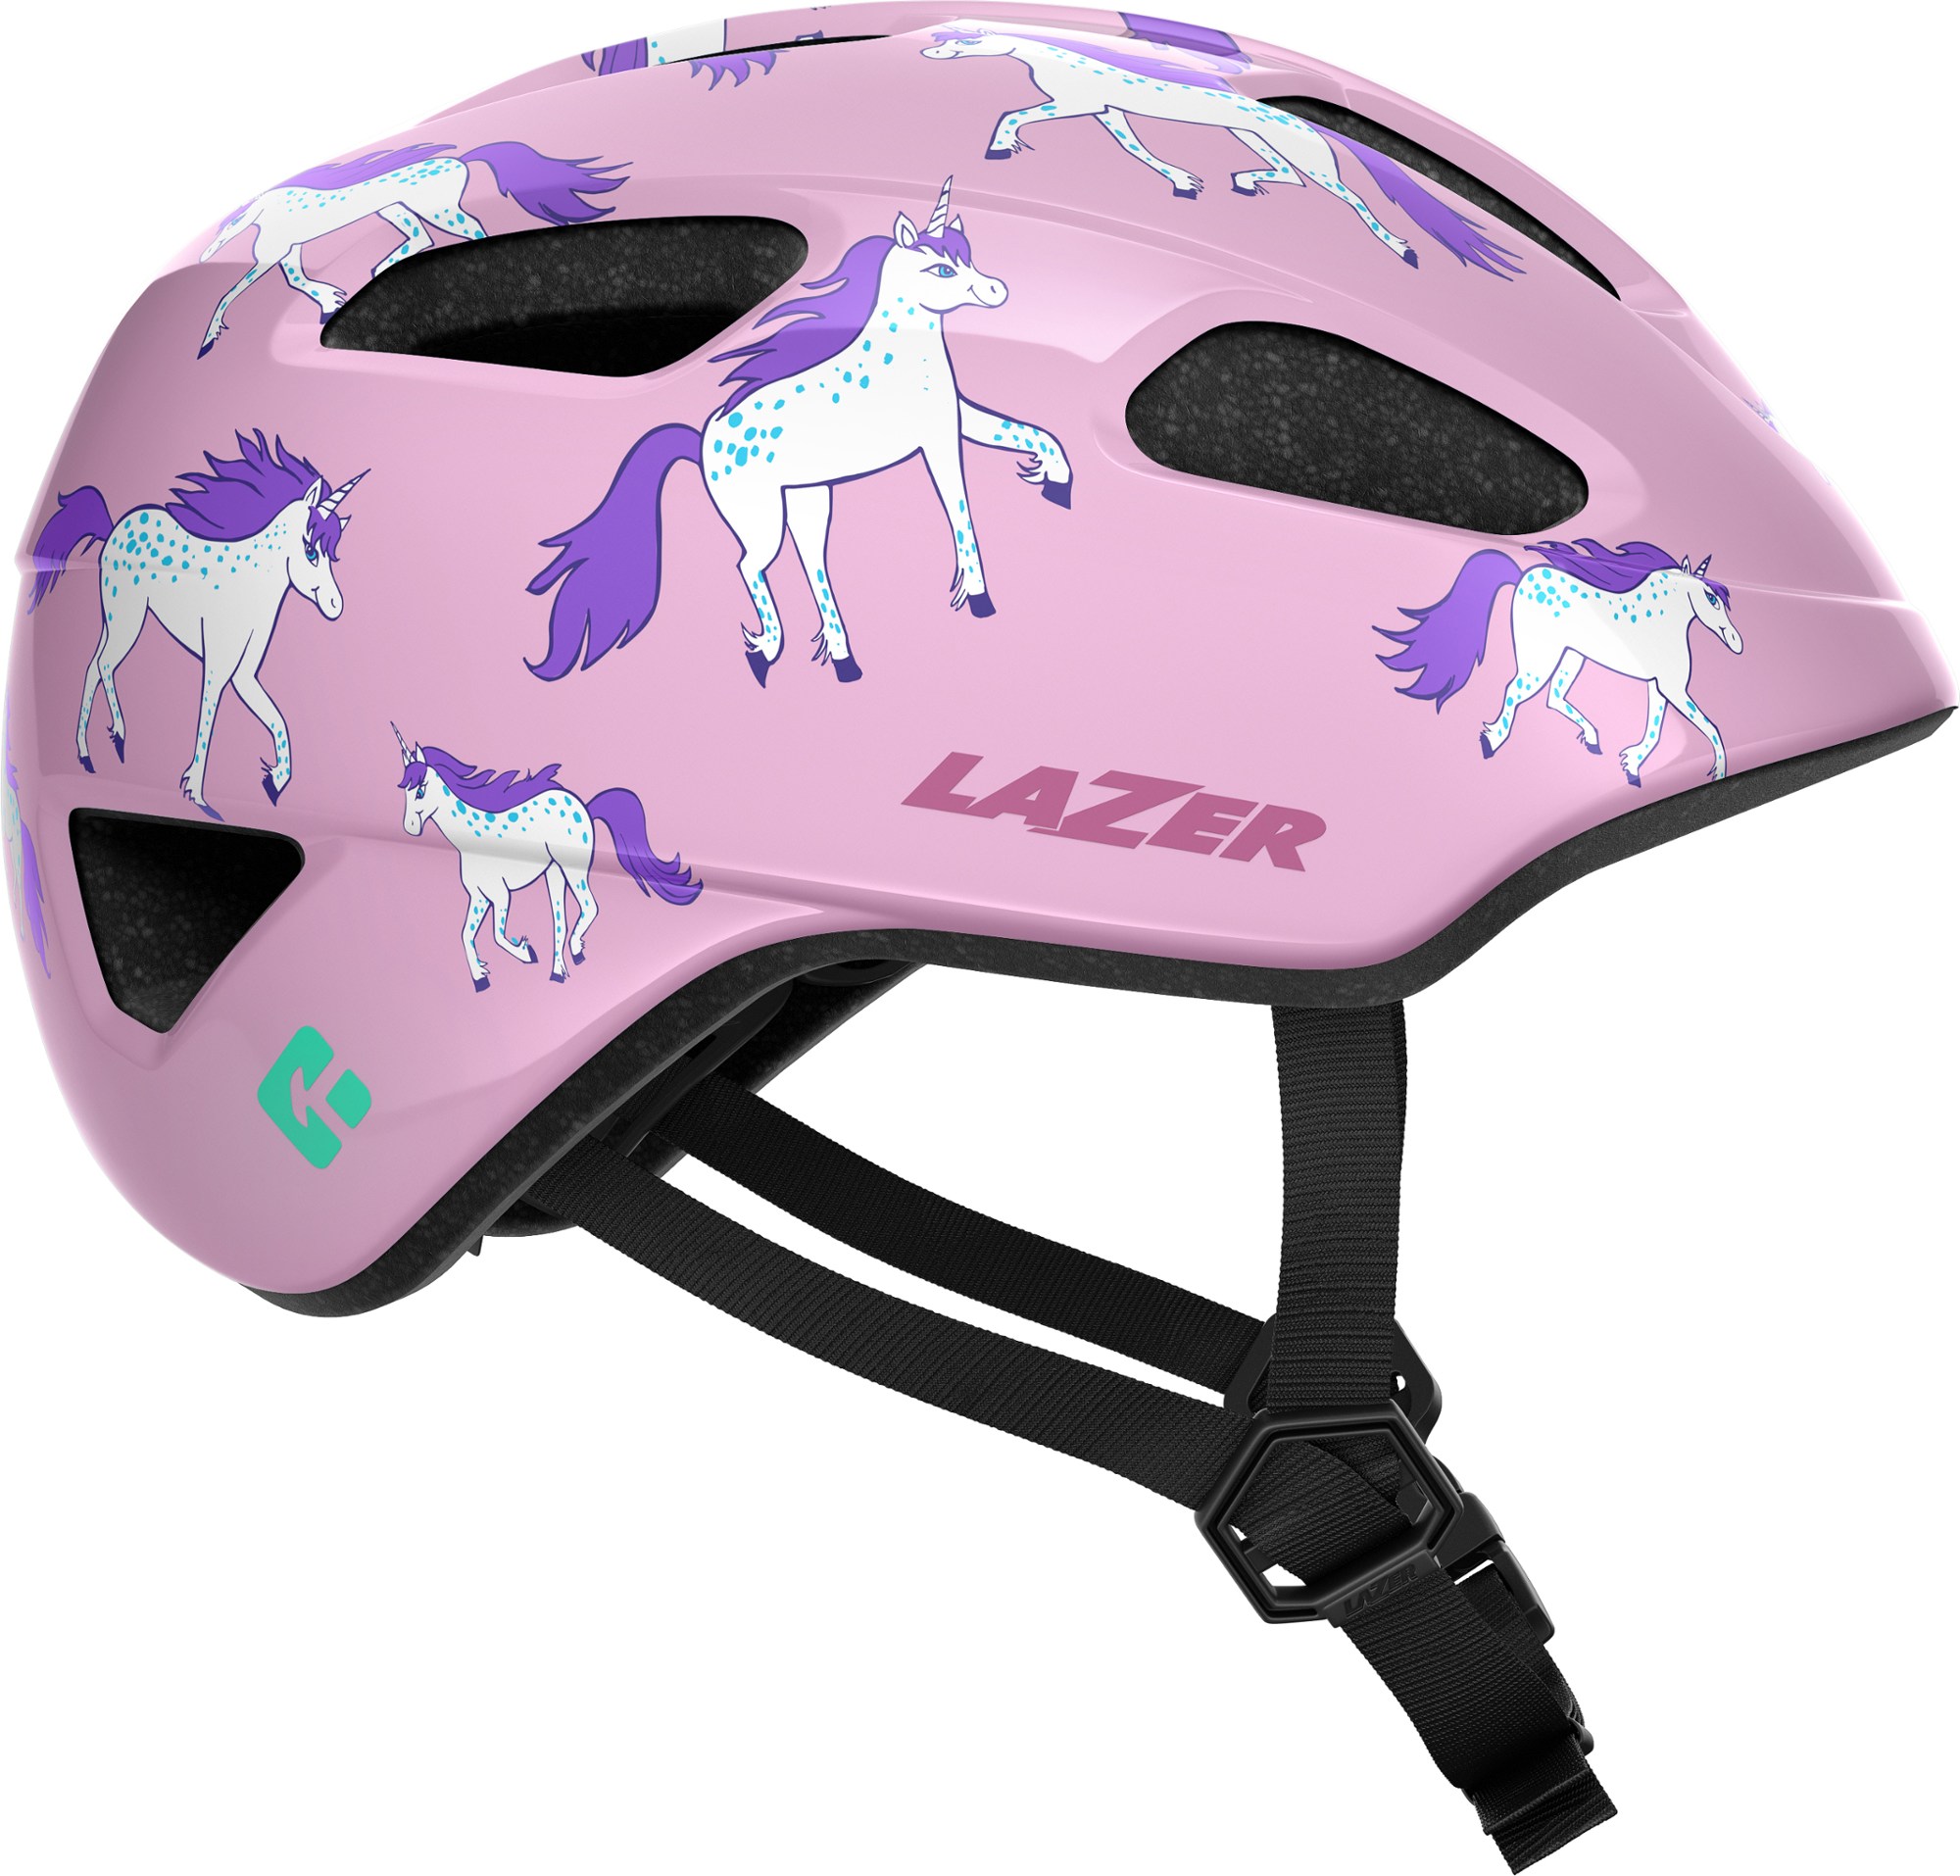 шлем велосипедный lazer coyote мат темно серый размер s blc2217888921 Велосипедный шлем Nutz KinetiCore — детский Lazer, розовый